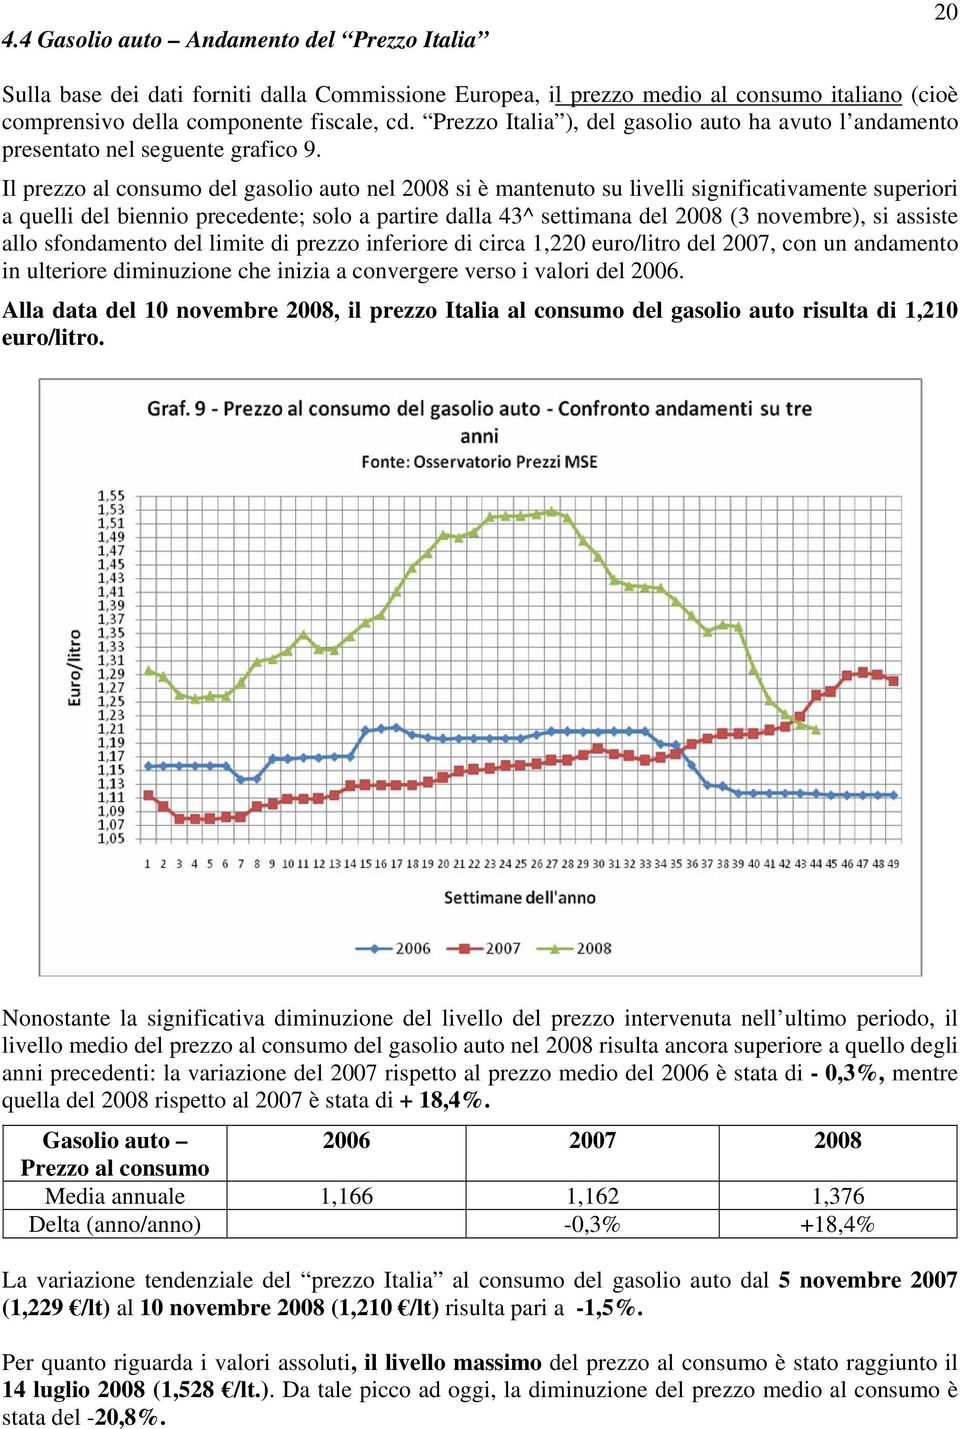 Il prezzo al consumo del gasolio auto nel 2008 si è mantenuto su livelli significativamente superiori a quelli del biennio precedente; solo a partire dalla 43^ settimana del 2008 (3 novembre), si